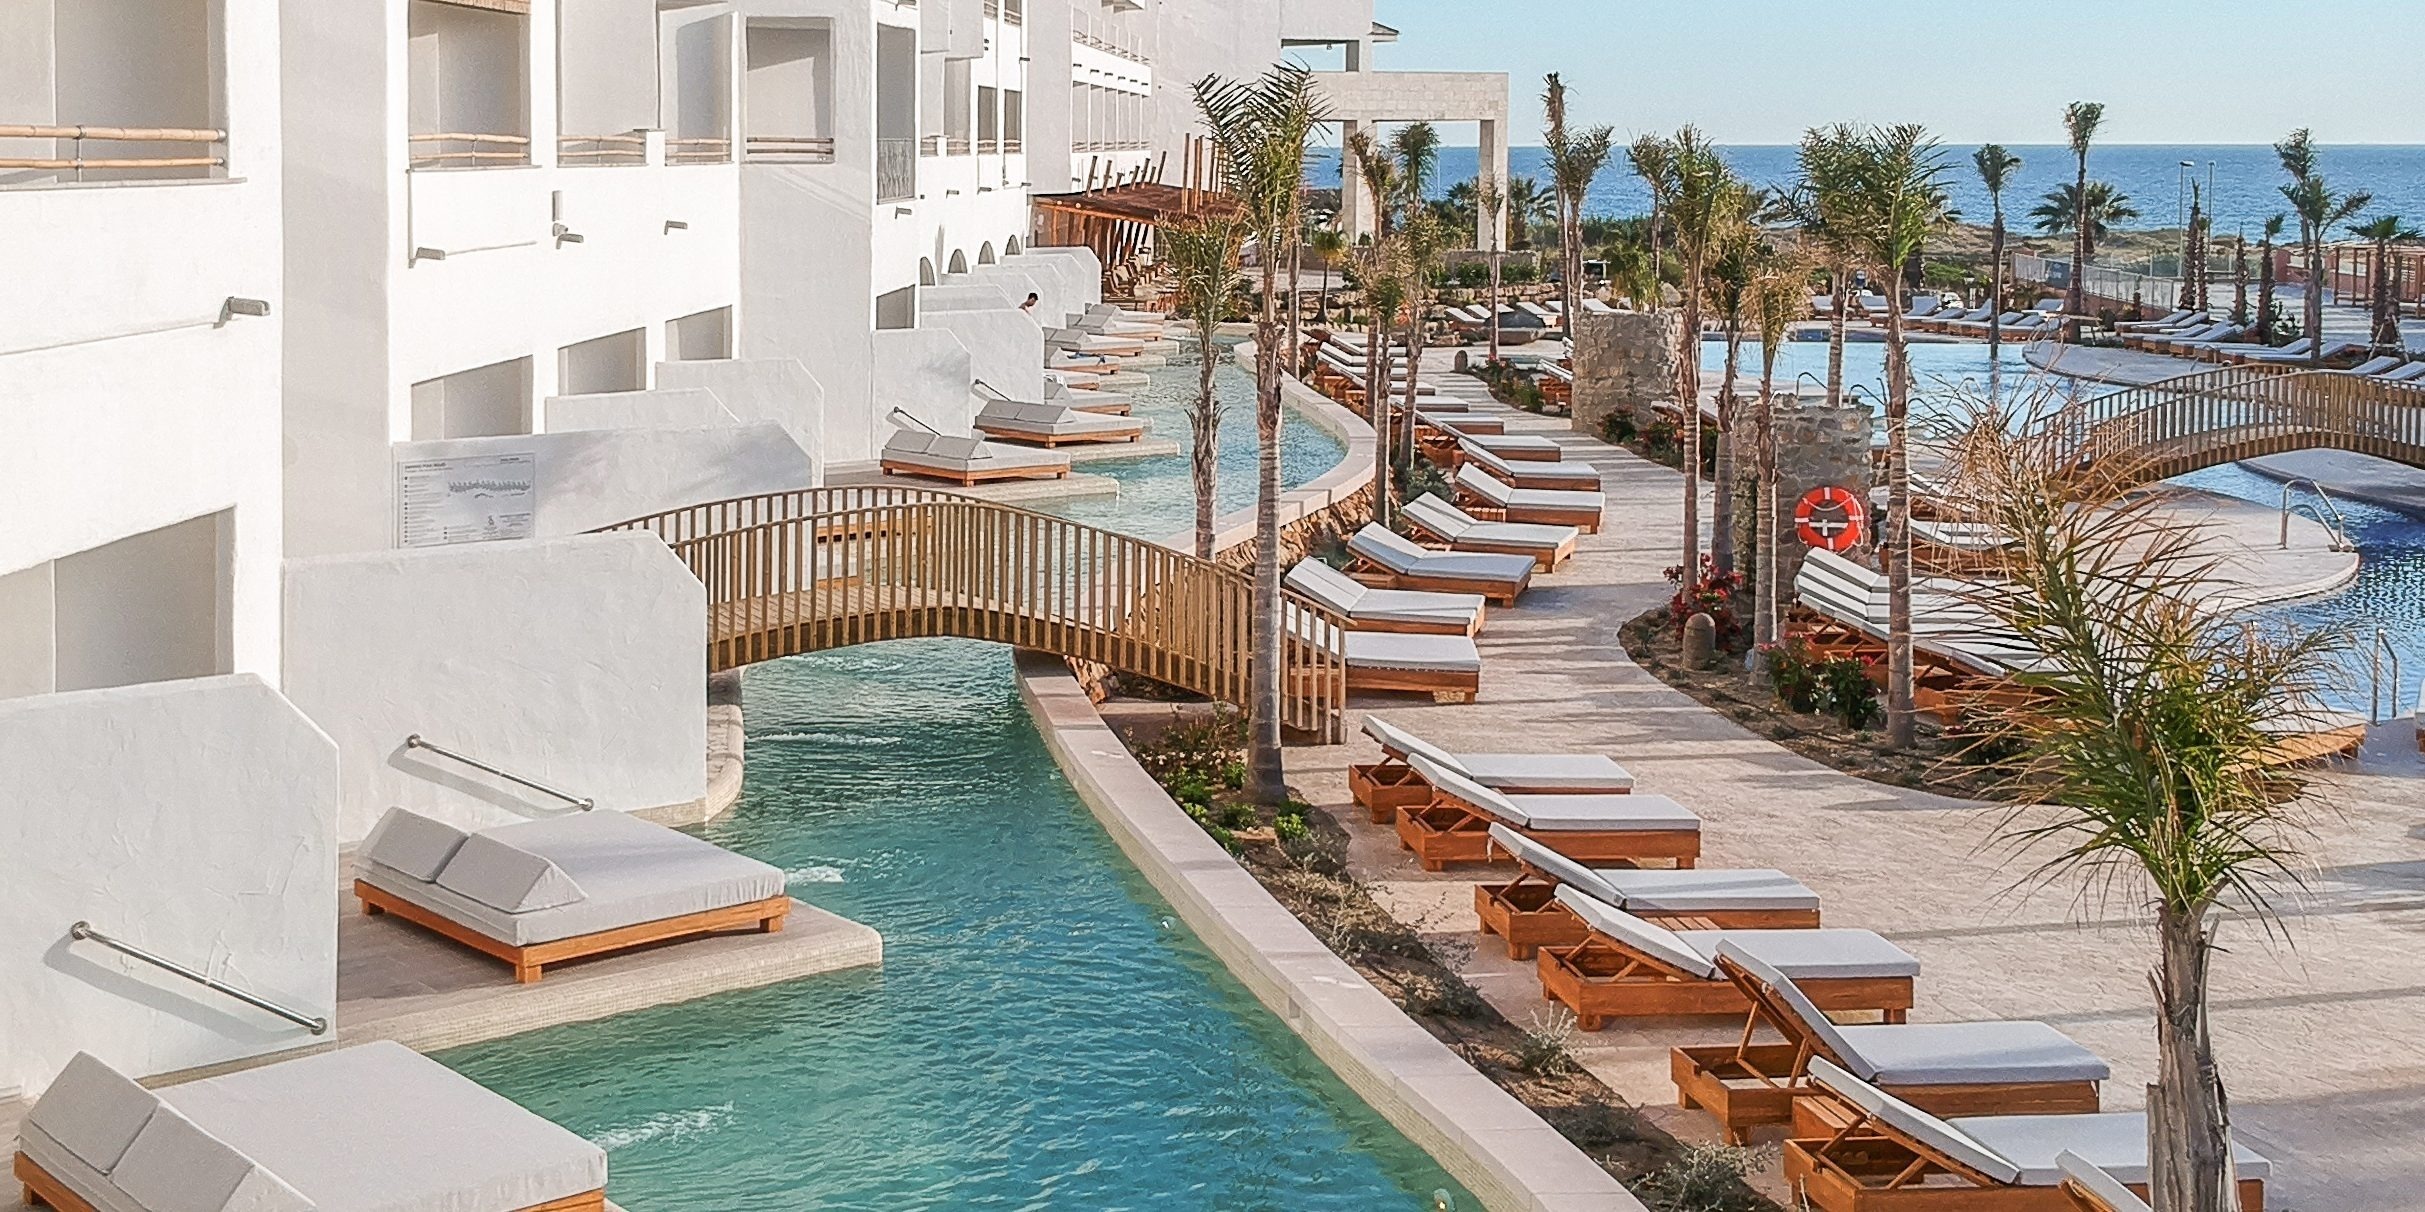 Europa sur: El hotel Zahara Beach, nominado a mejor resort de españa por la revista condé nast traveler